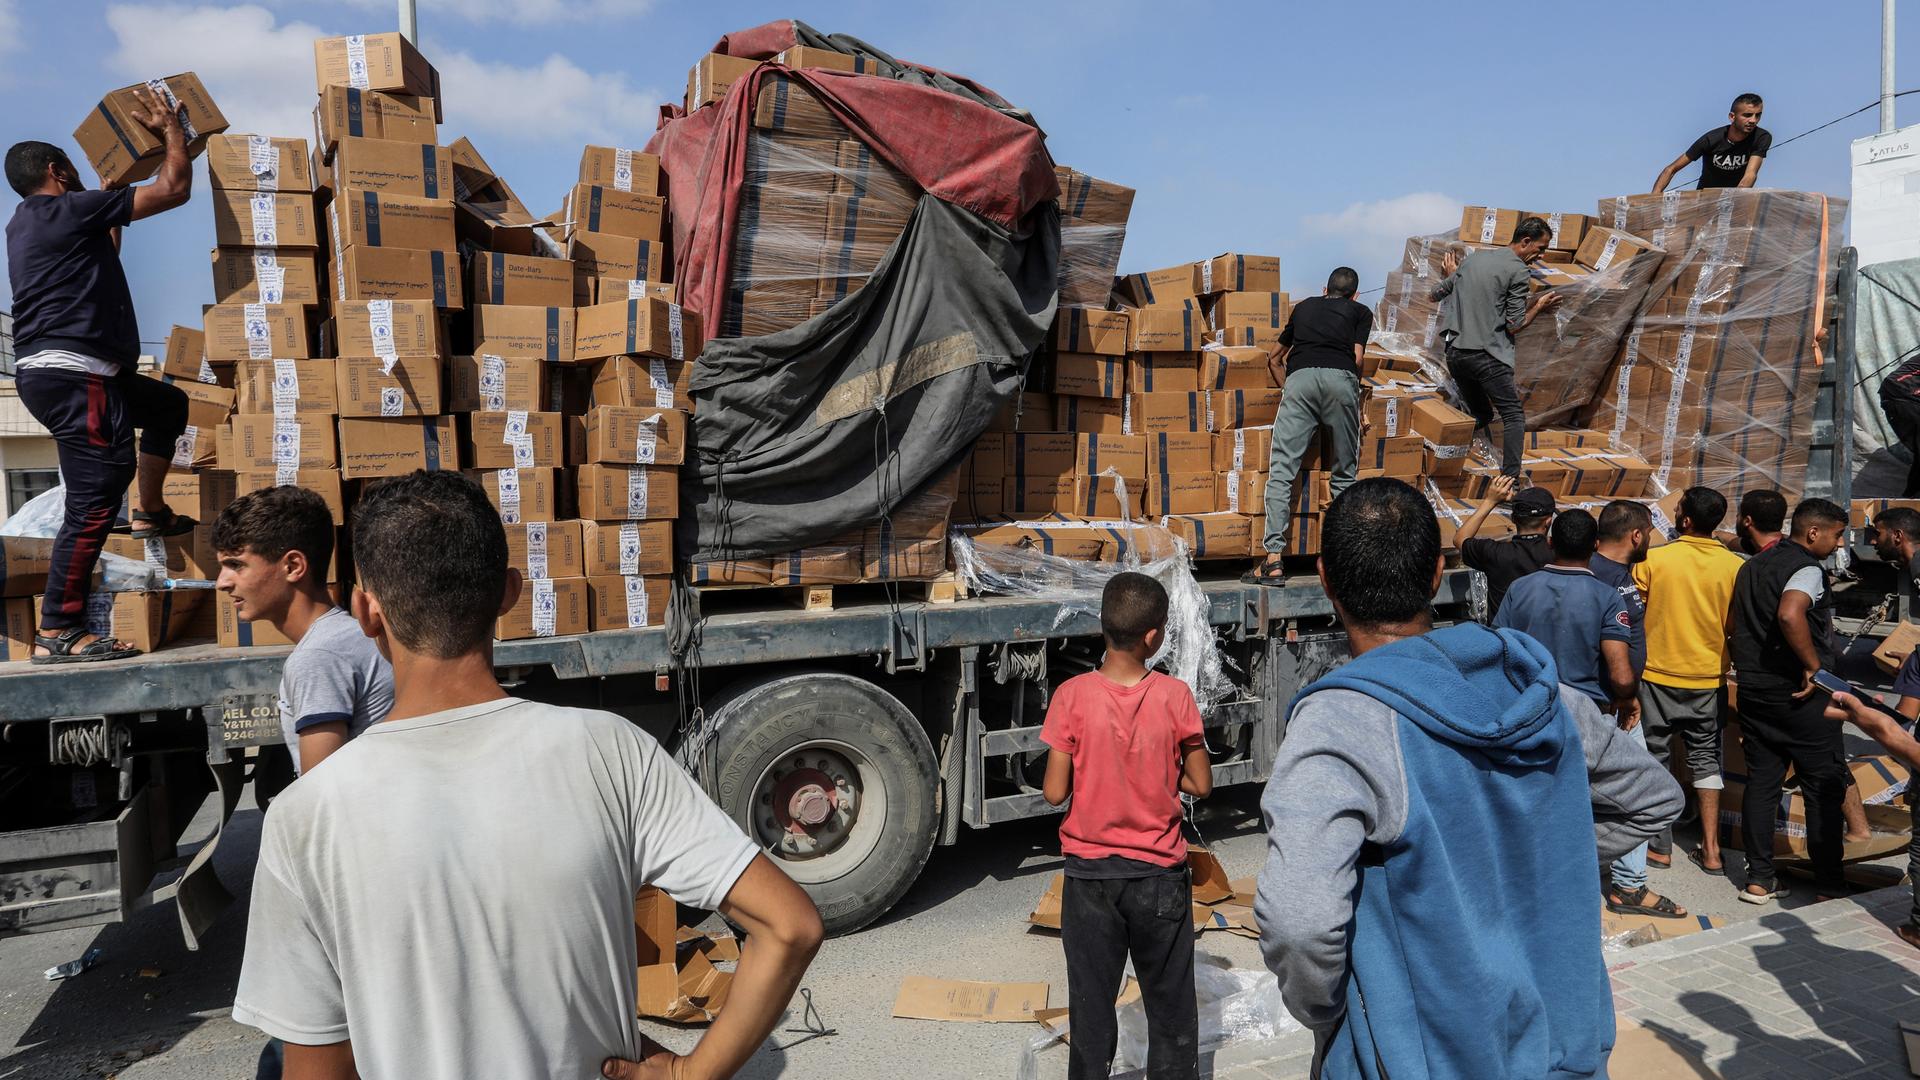 Palästinenser im Gazastreifen beim Abladen von Hilfsgütern von einem Lkw. Die Hilfsgüter kamen über den Grenzübergang Rafah zu Ägypten.